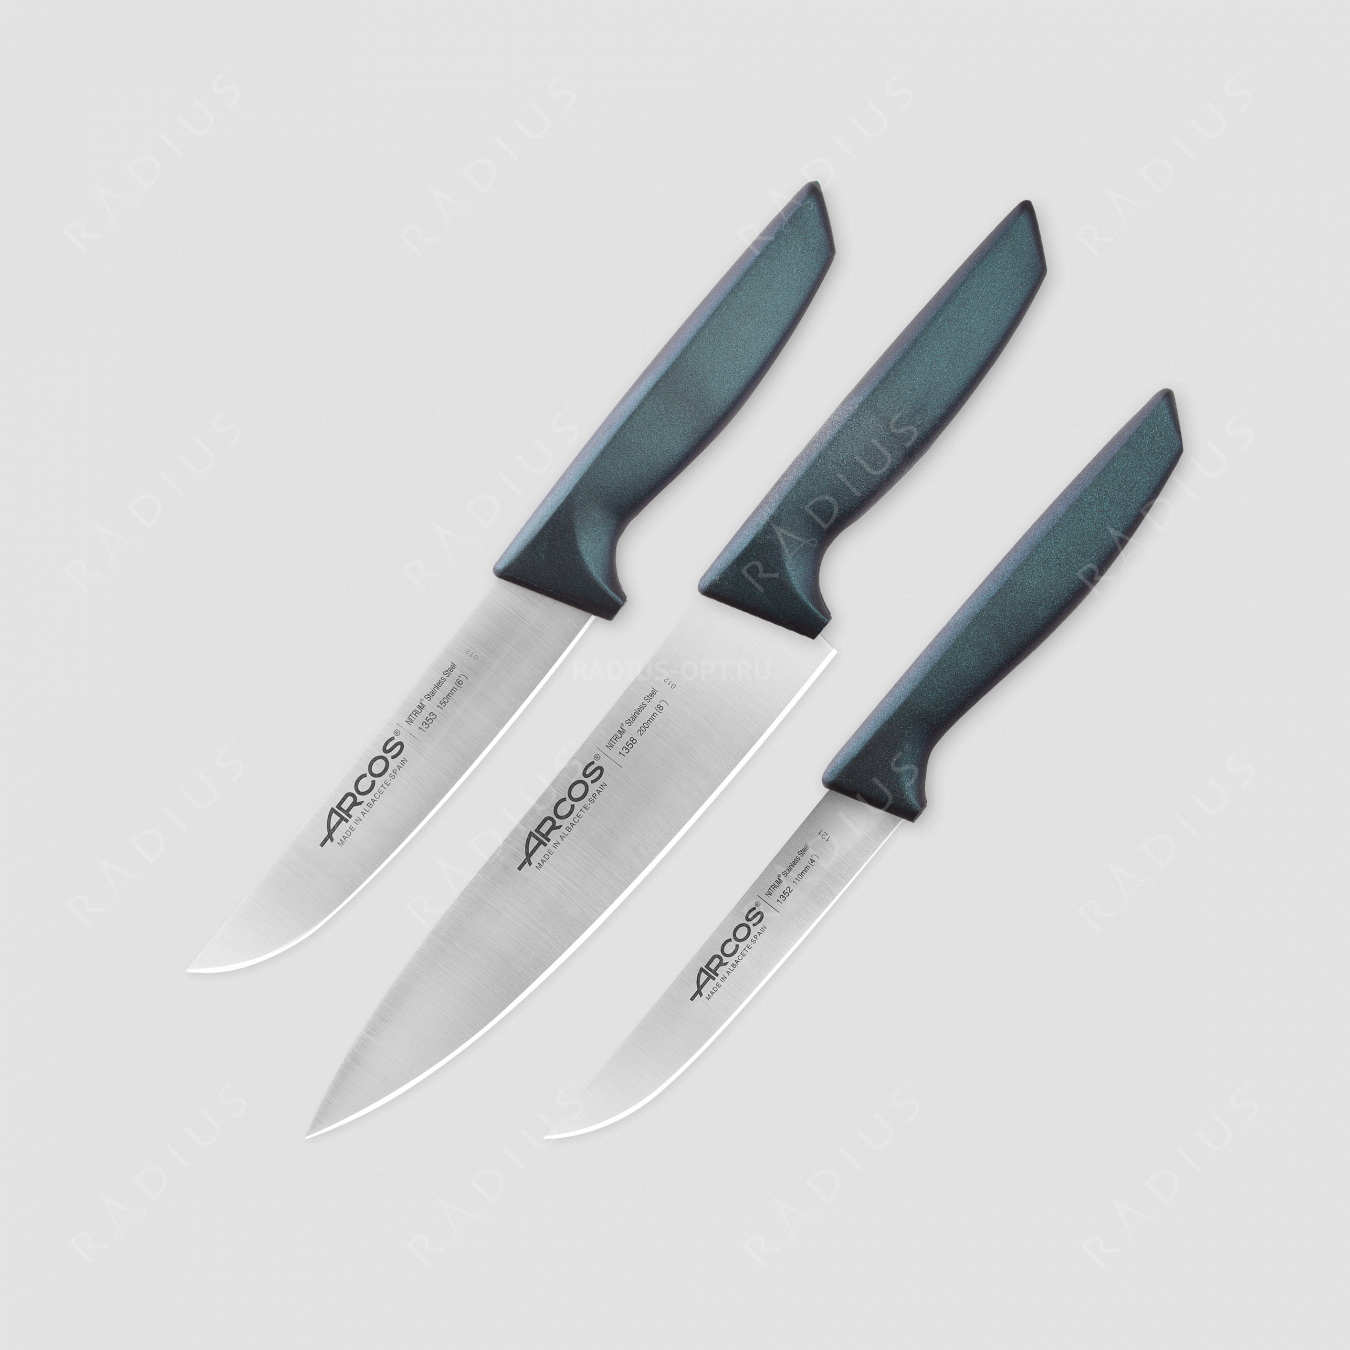 Набор кухонных ножей в коробке, 3 шт (110 мм, 150 мм, 200 мм,) синие ручки, серия Niza, ARCOS, Испания